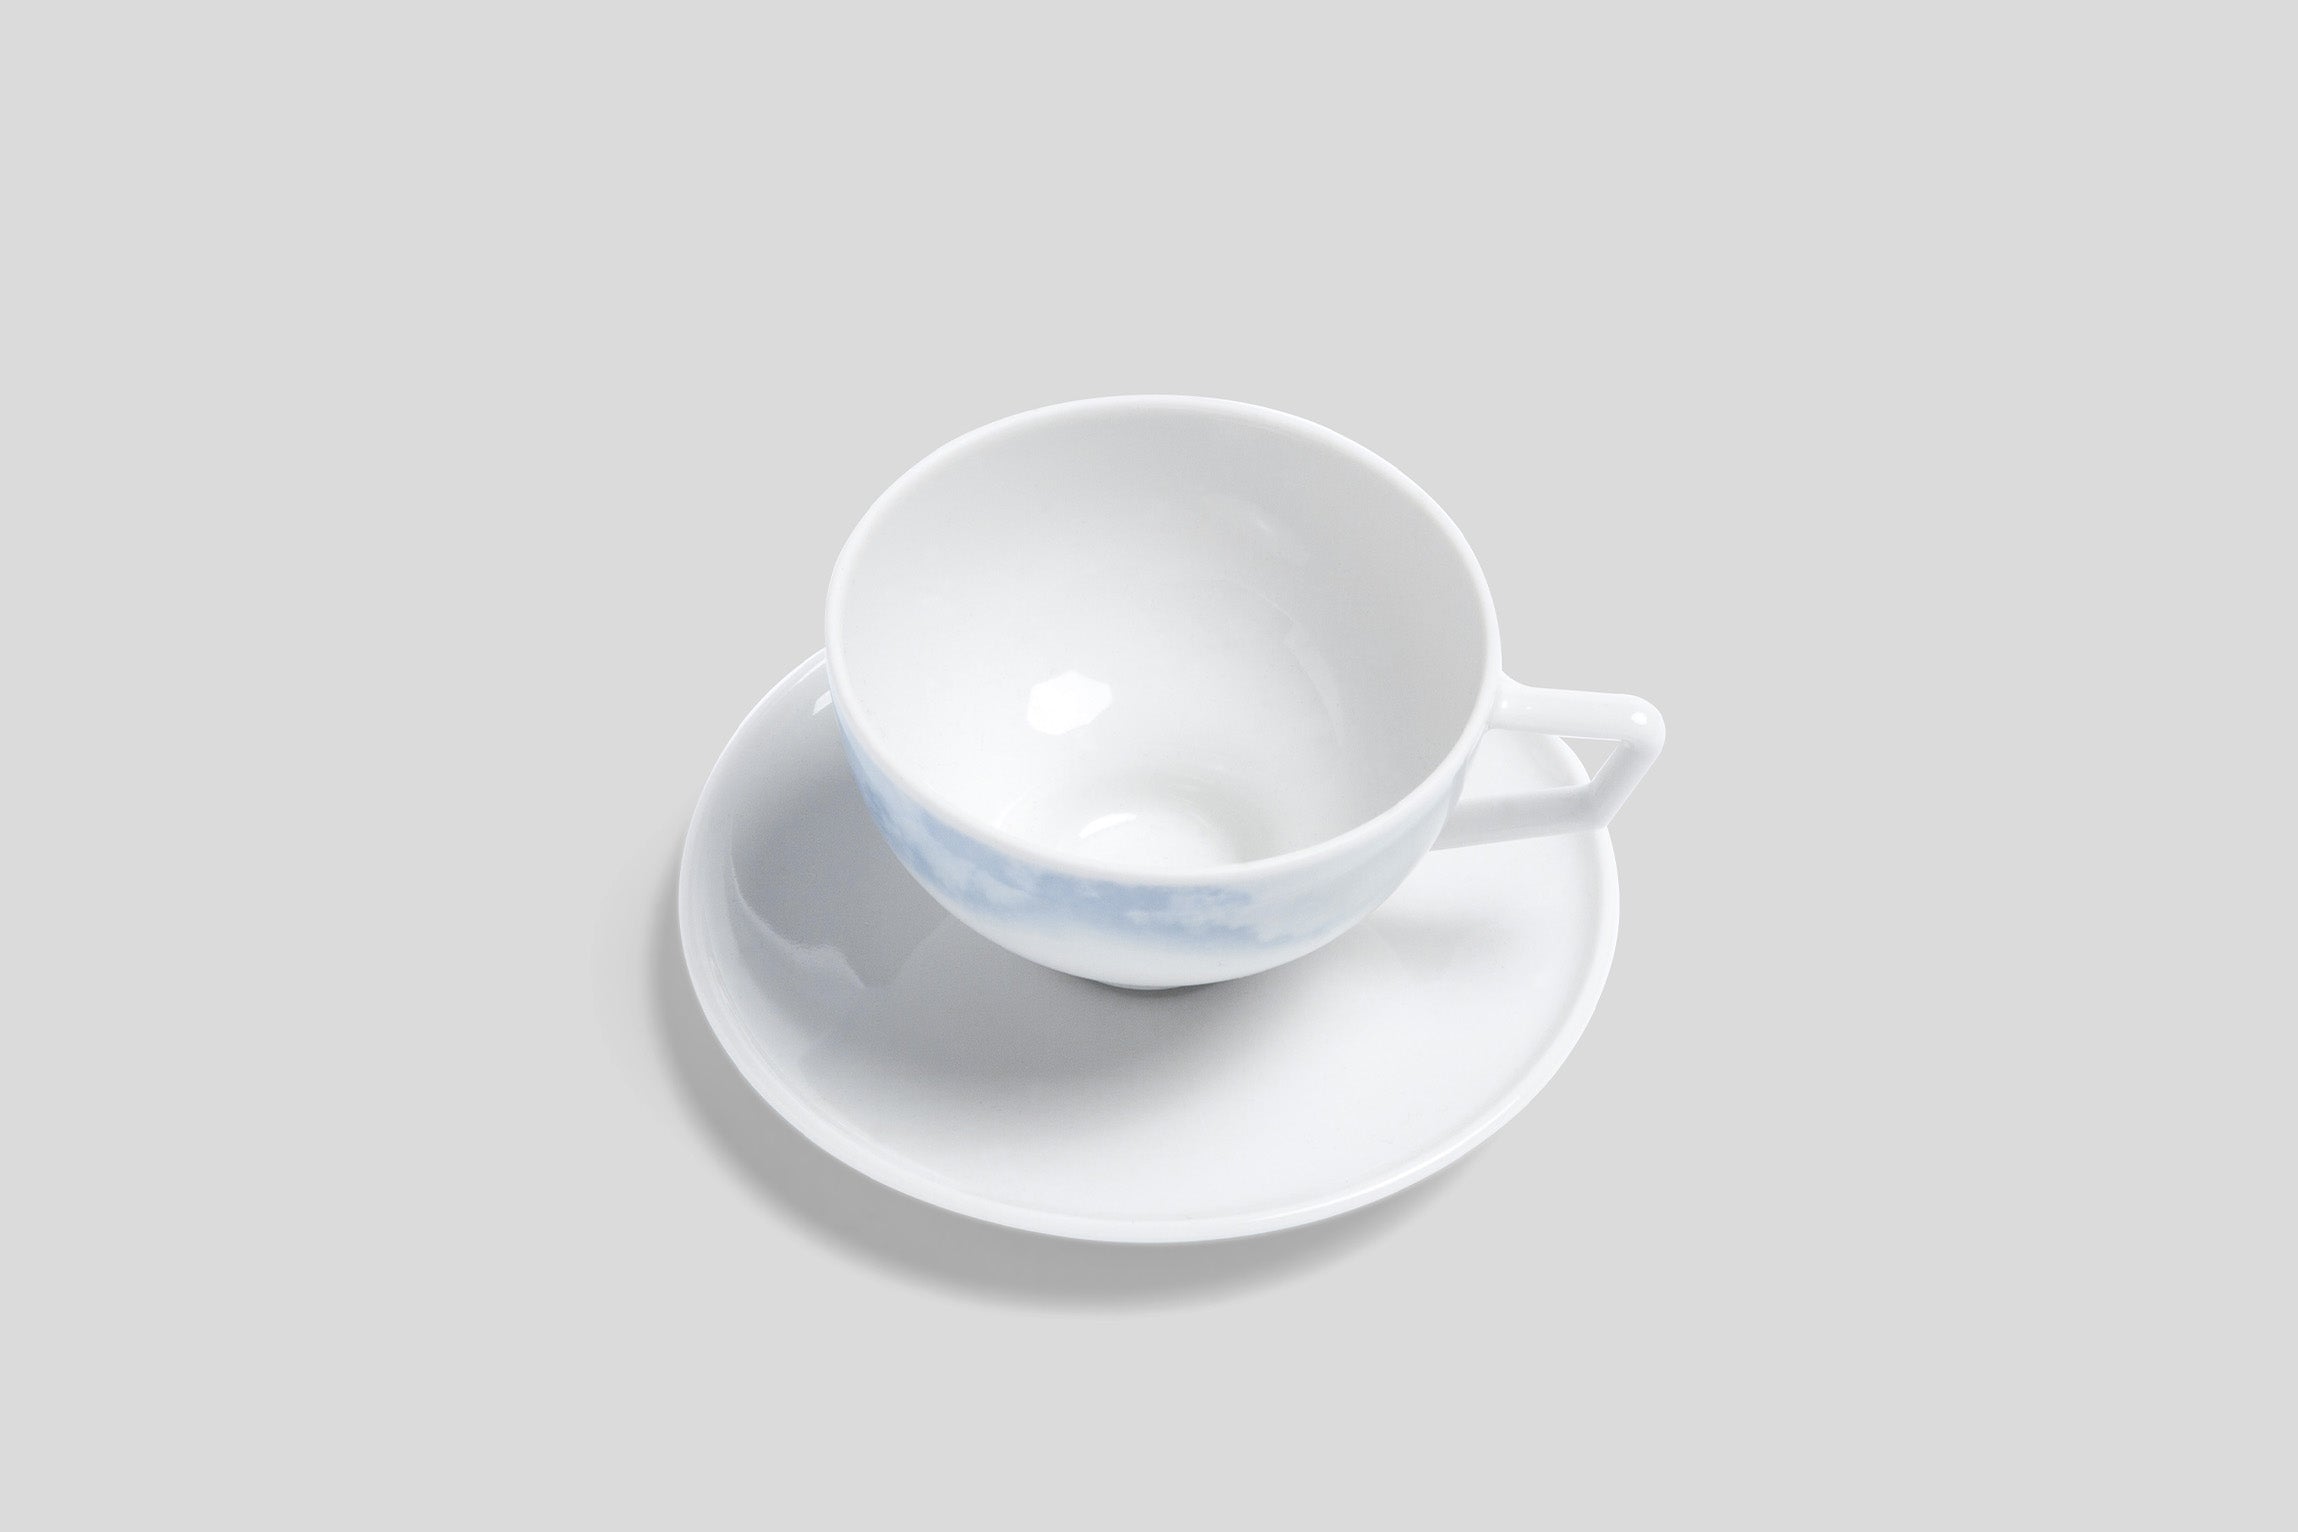 Designer-Luxury-Modern-Bodo Sperlein Pomona Tempest Espresso Cup & Saucer-Bodo Sperlein-Bodo Sperlein-Bone China-Designer-Luxury-Modern-Tasse-Becher-Kaffee Tasse